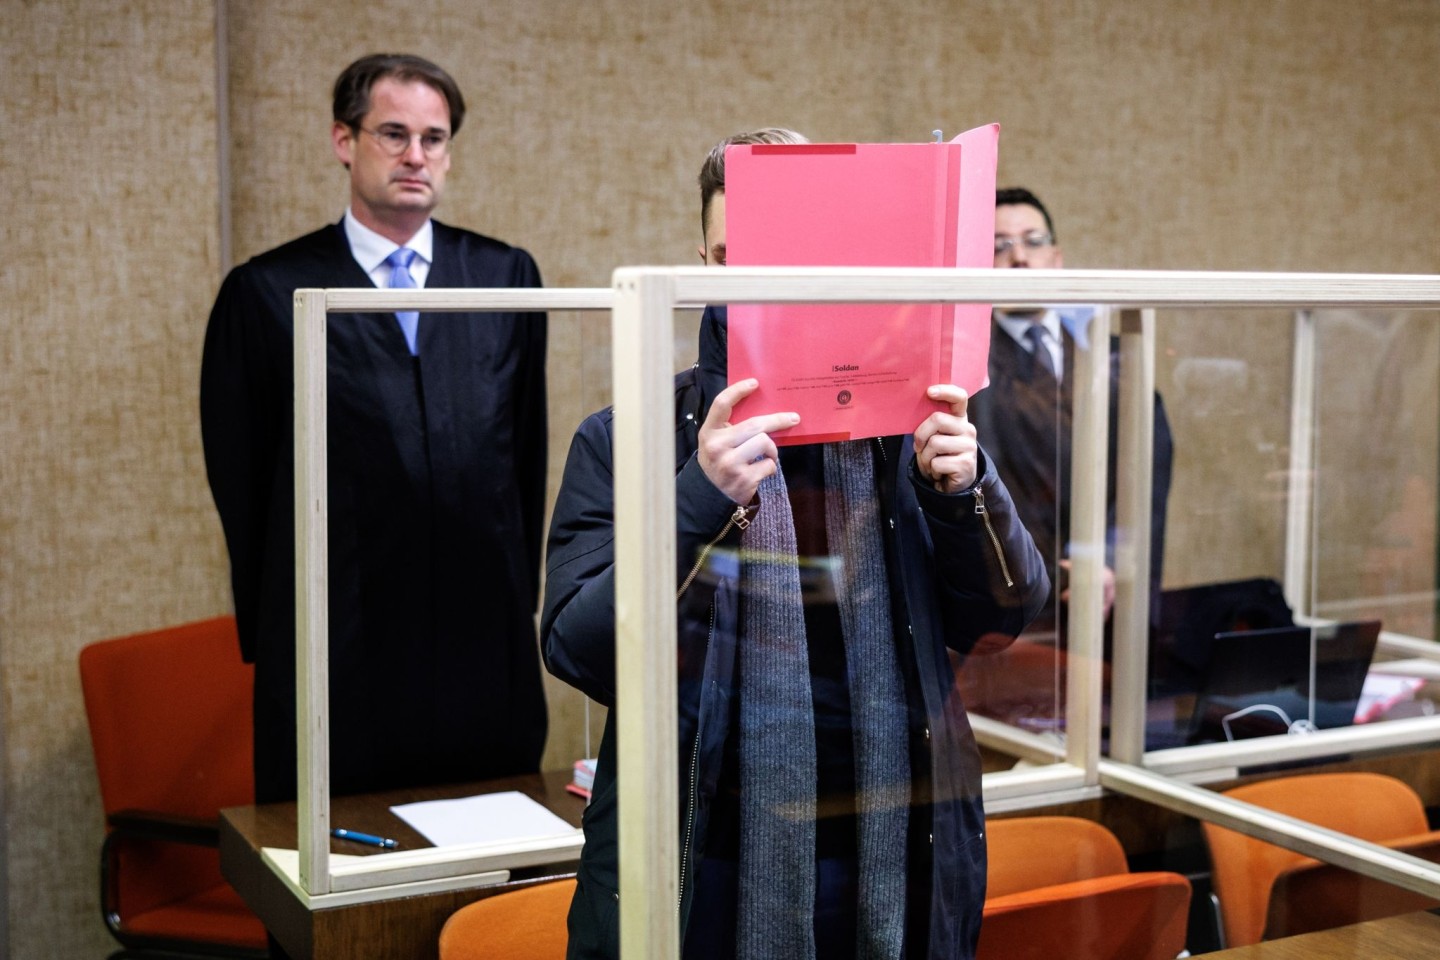 Der Angeklagte im Gerichtssaal in München.